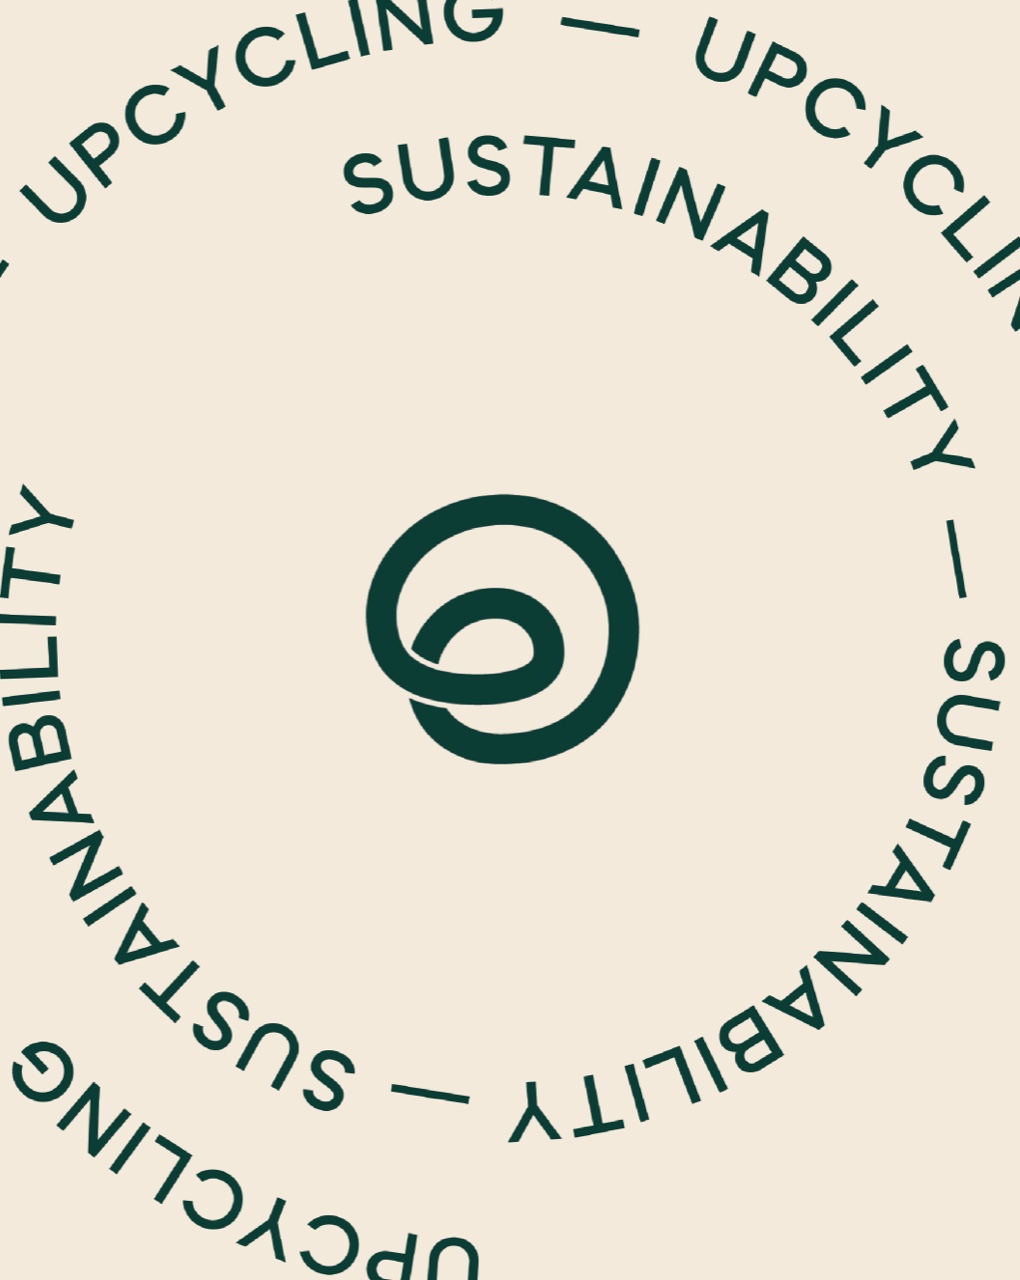 evergrain_sustainability_circularity_brand_wheel